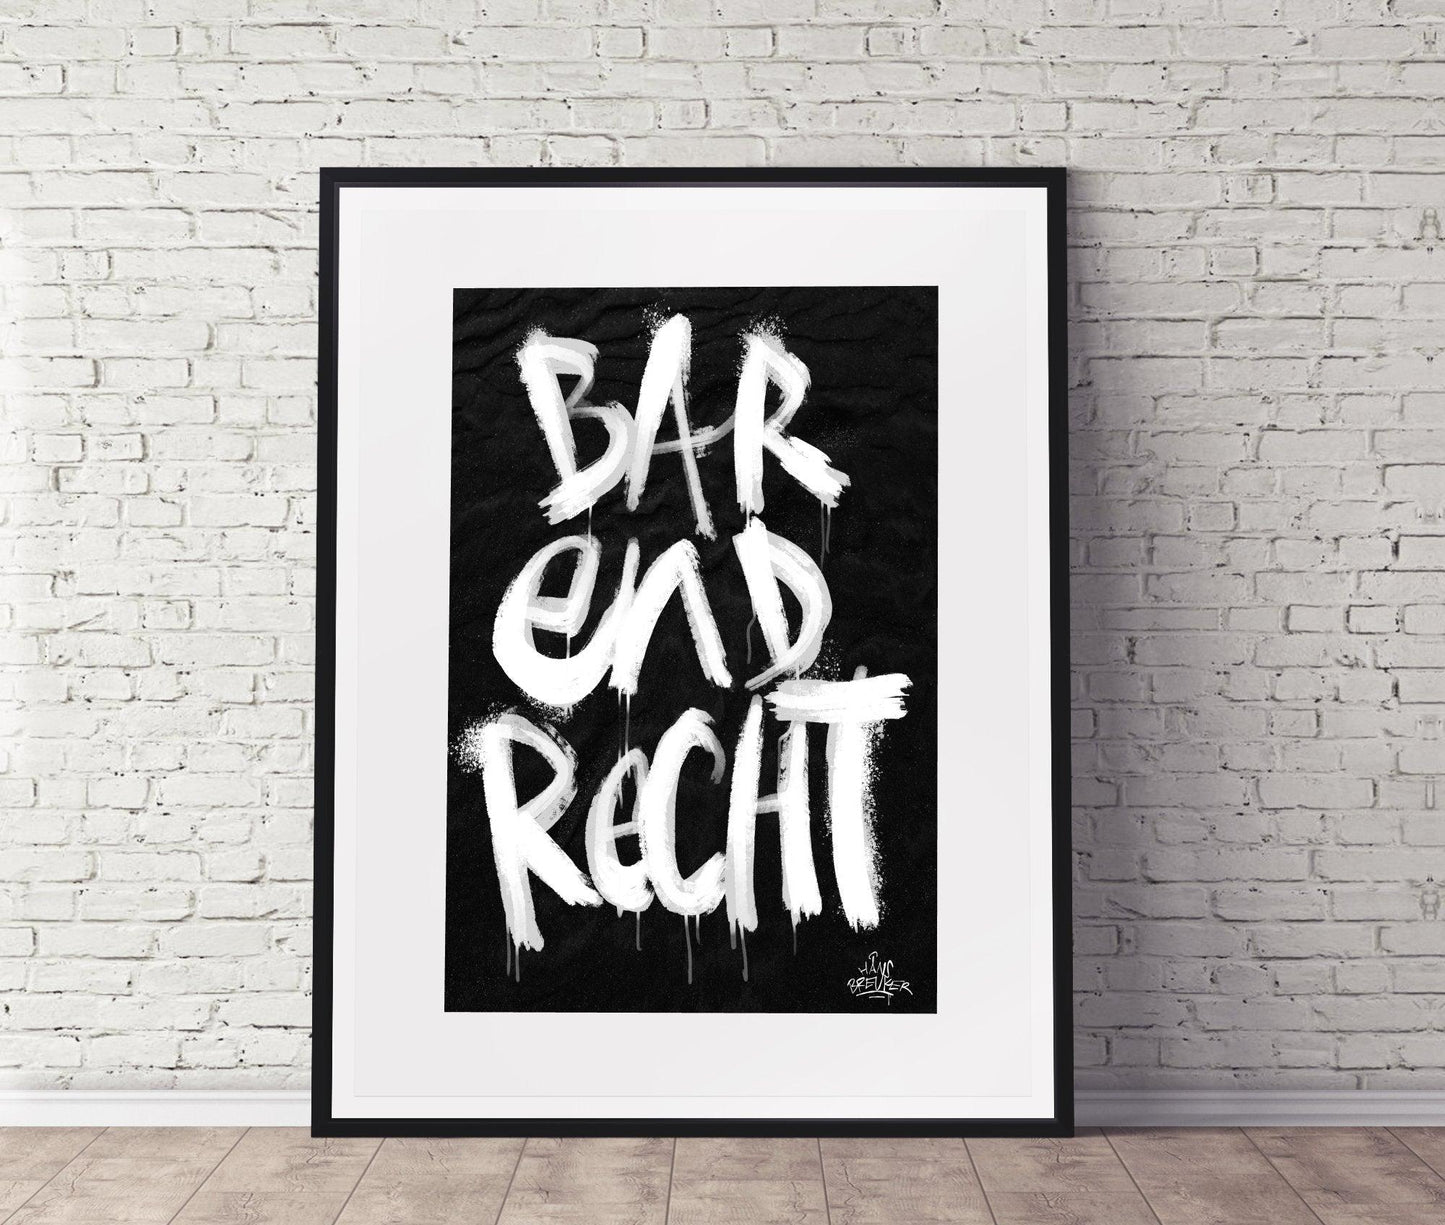 Kalligrafie Poster Barendrecht - Hans Breuker